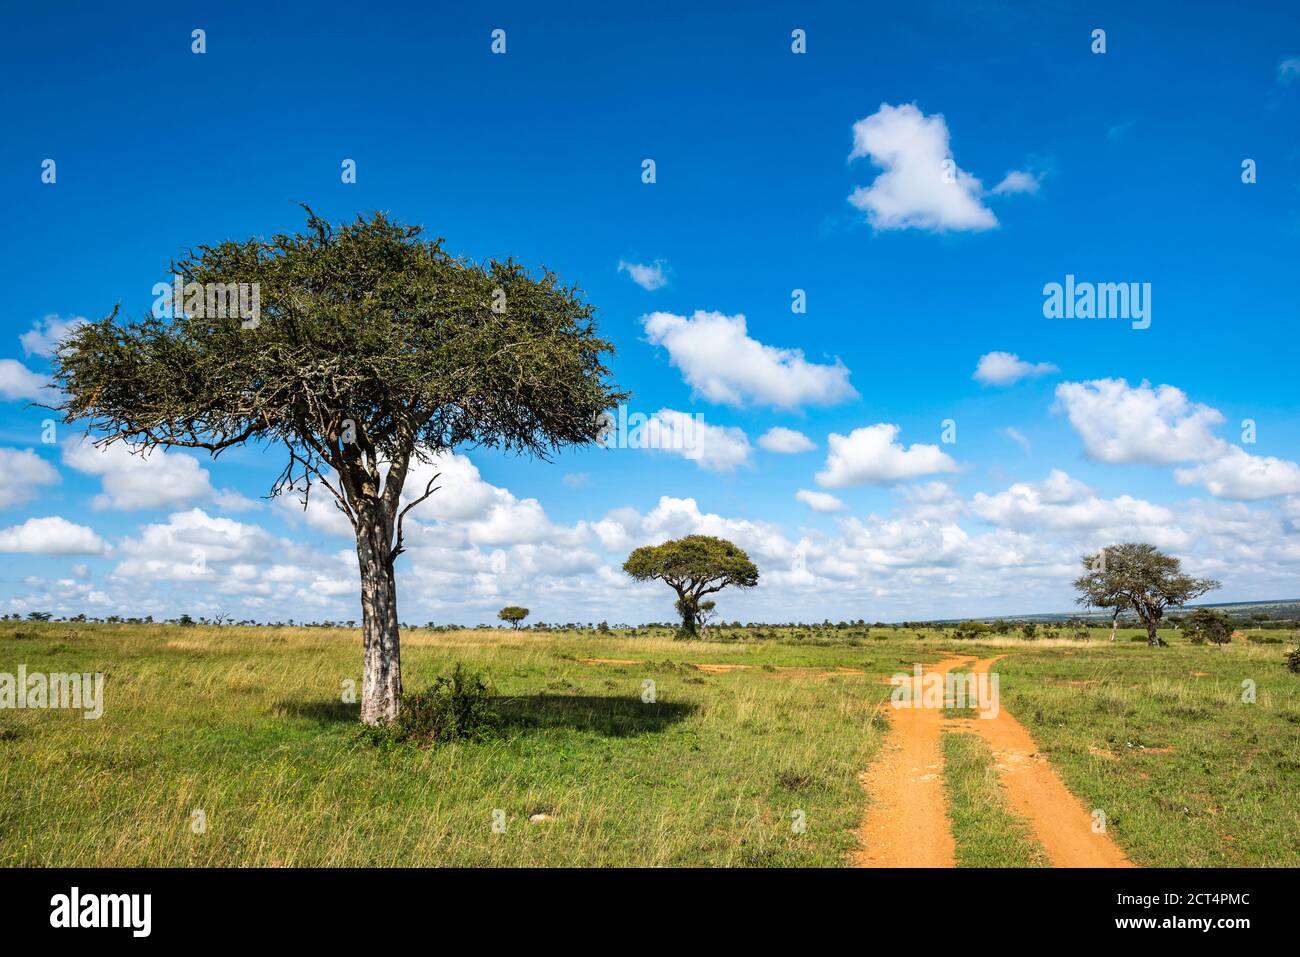 Acacia Trees at El Karama Ranch, Laikipia County, Kenya Stock Photo